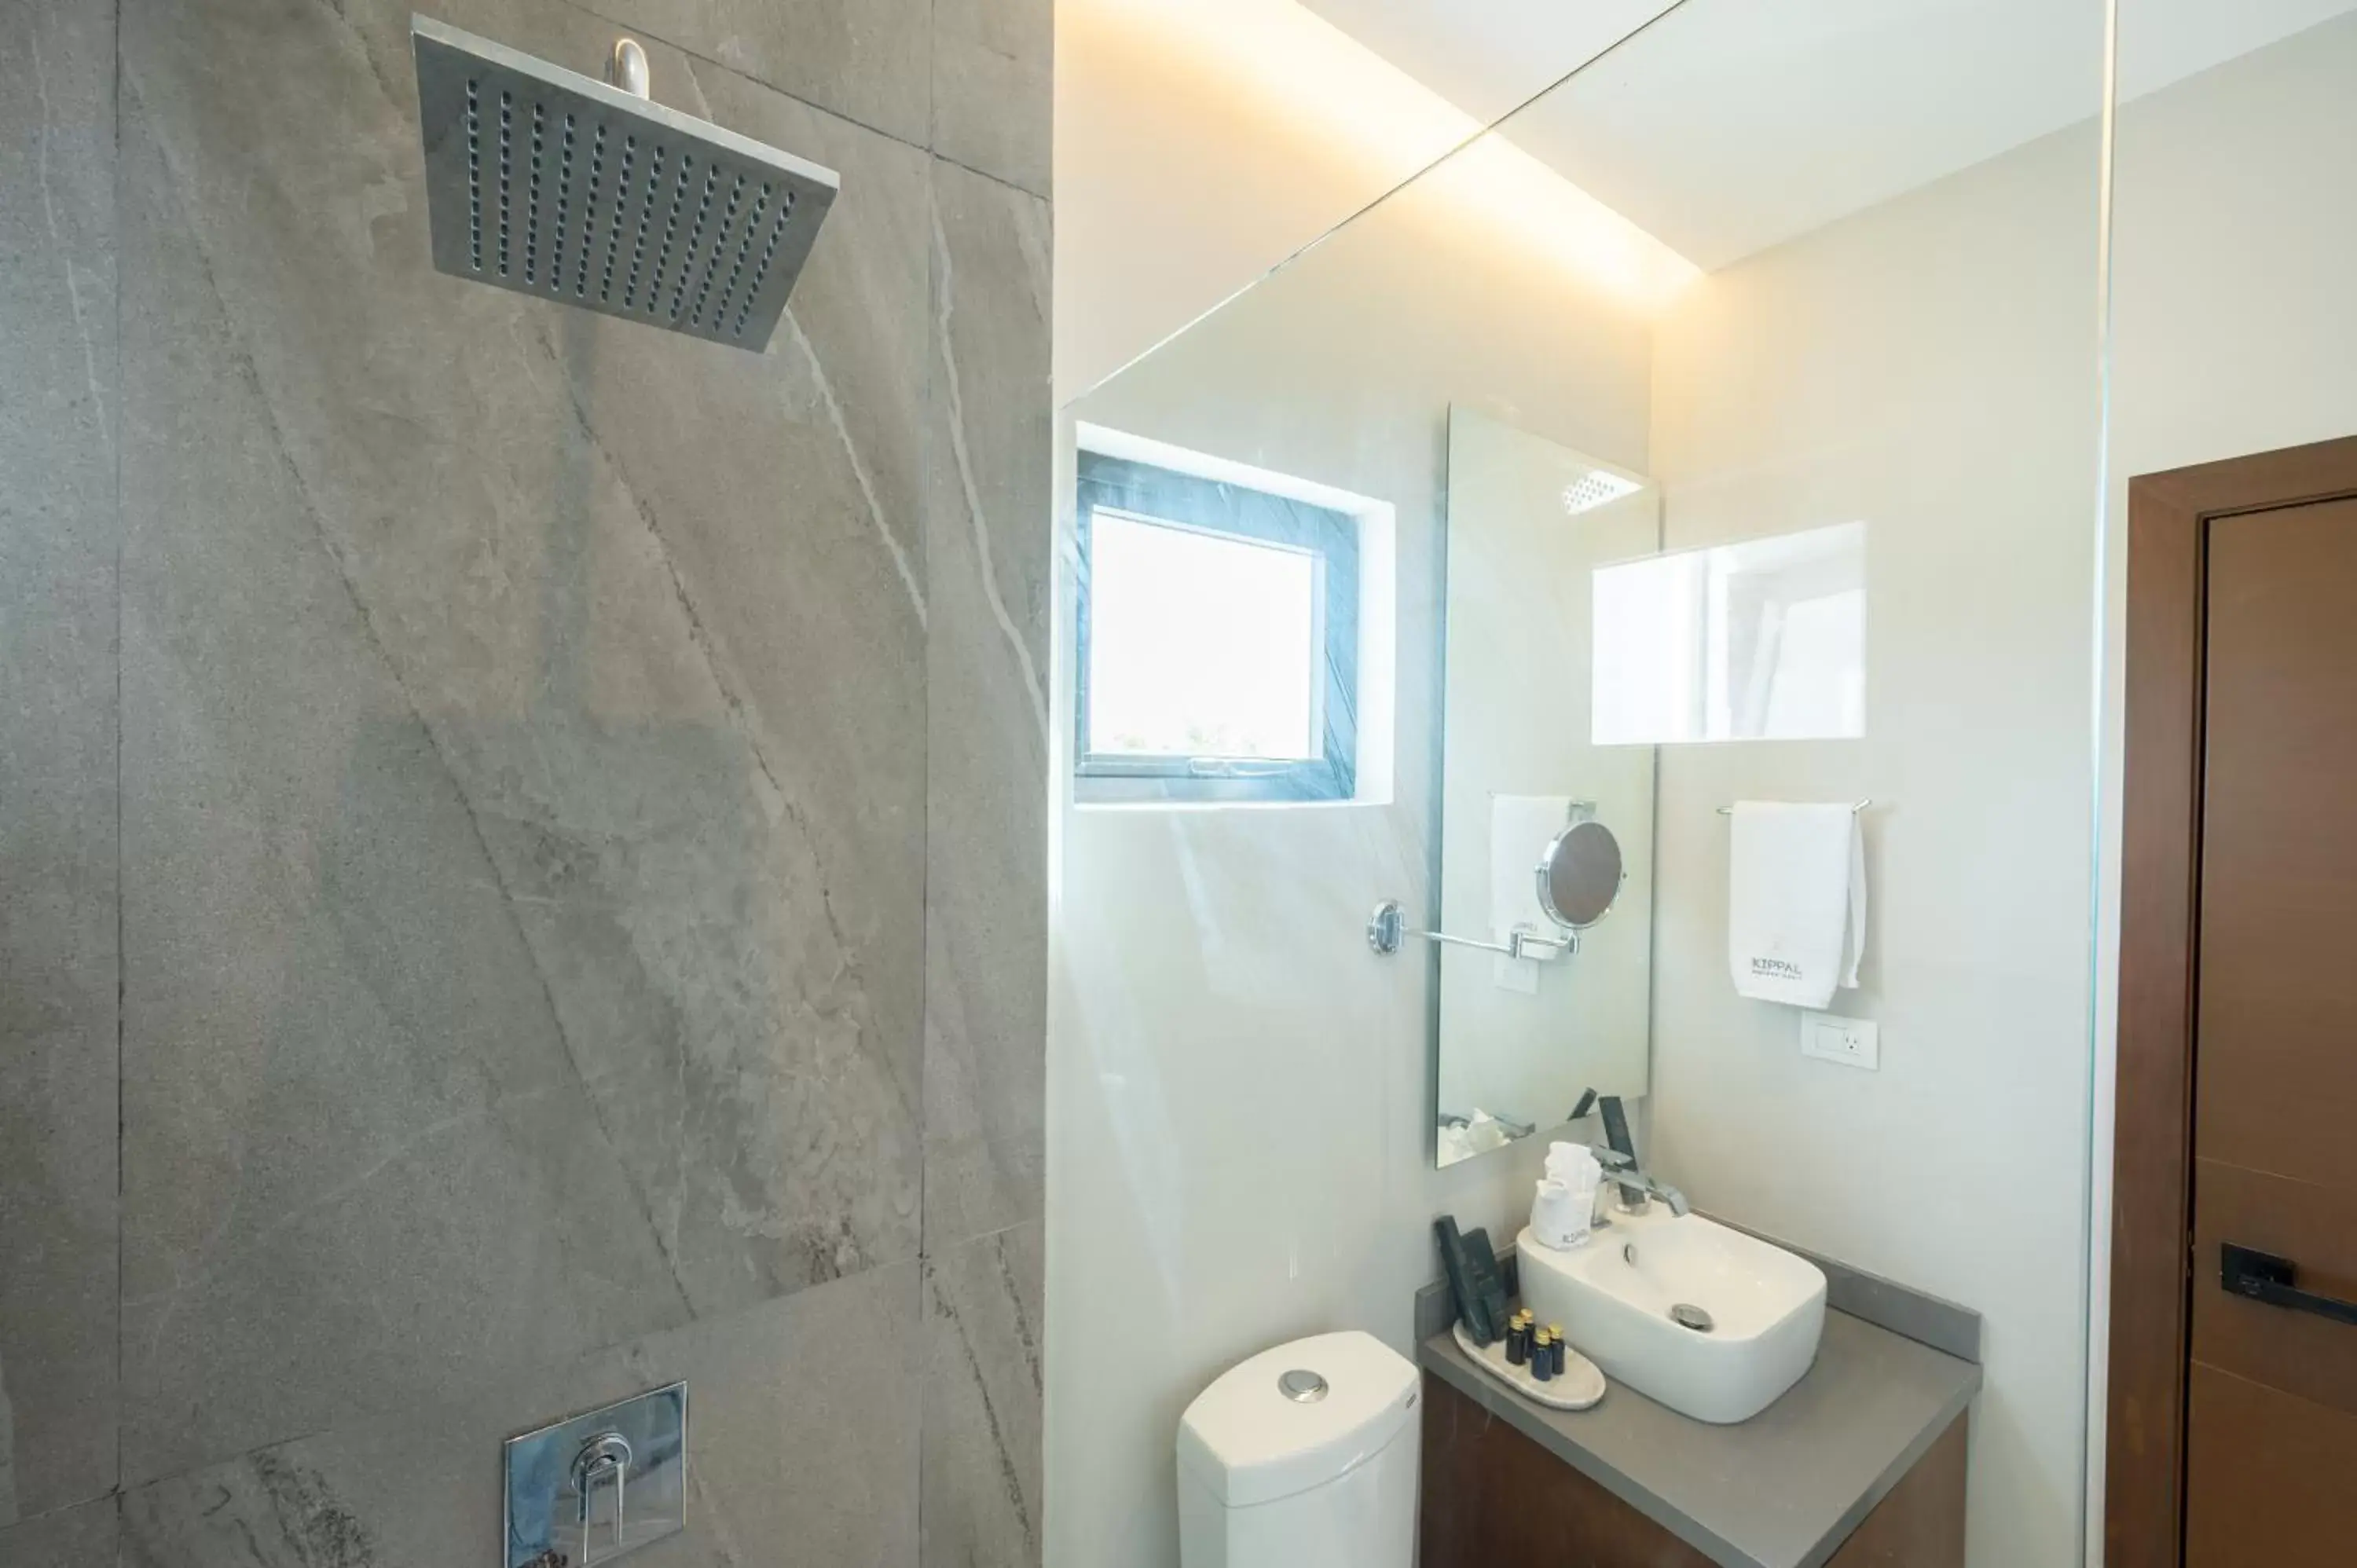 Bathroom in Kippal - Modern Oasis - ApartHotel